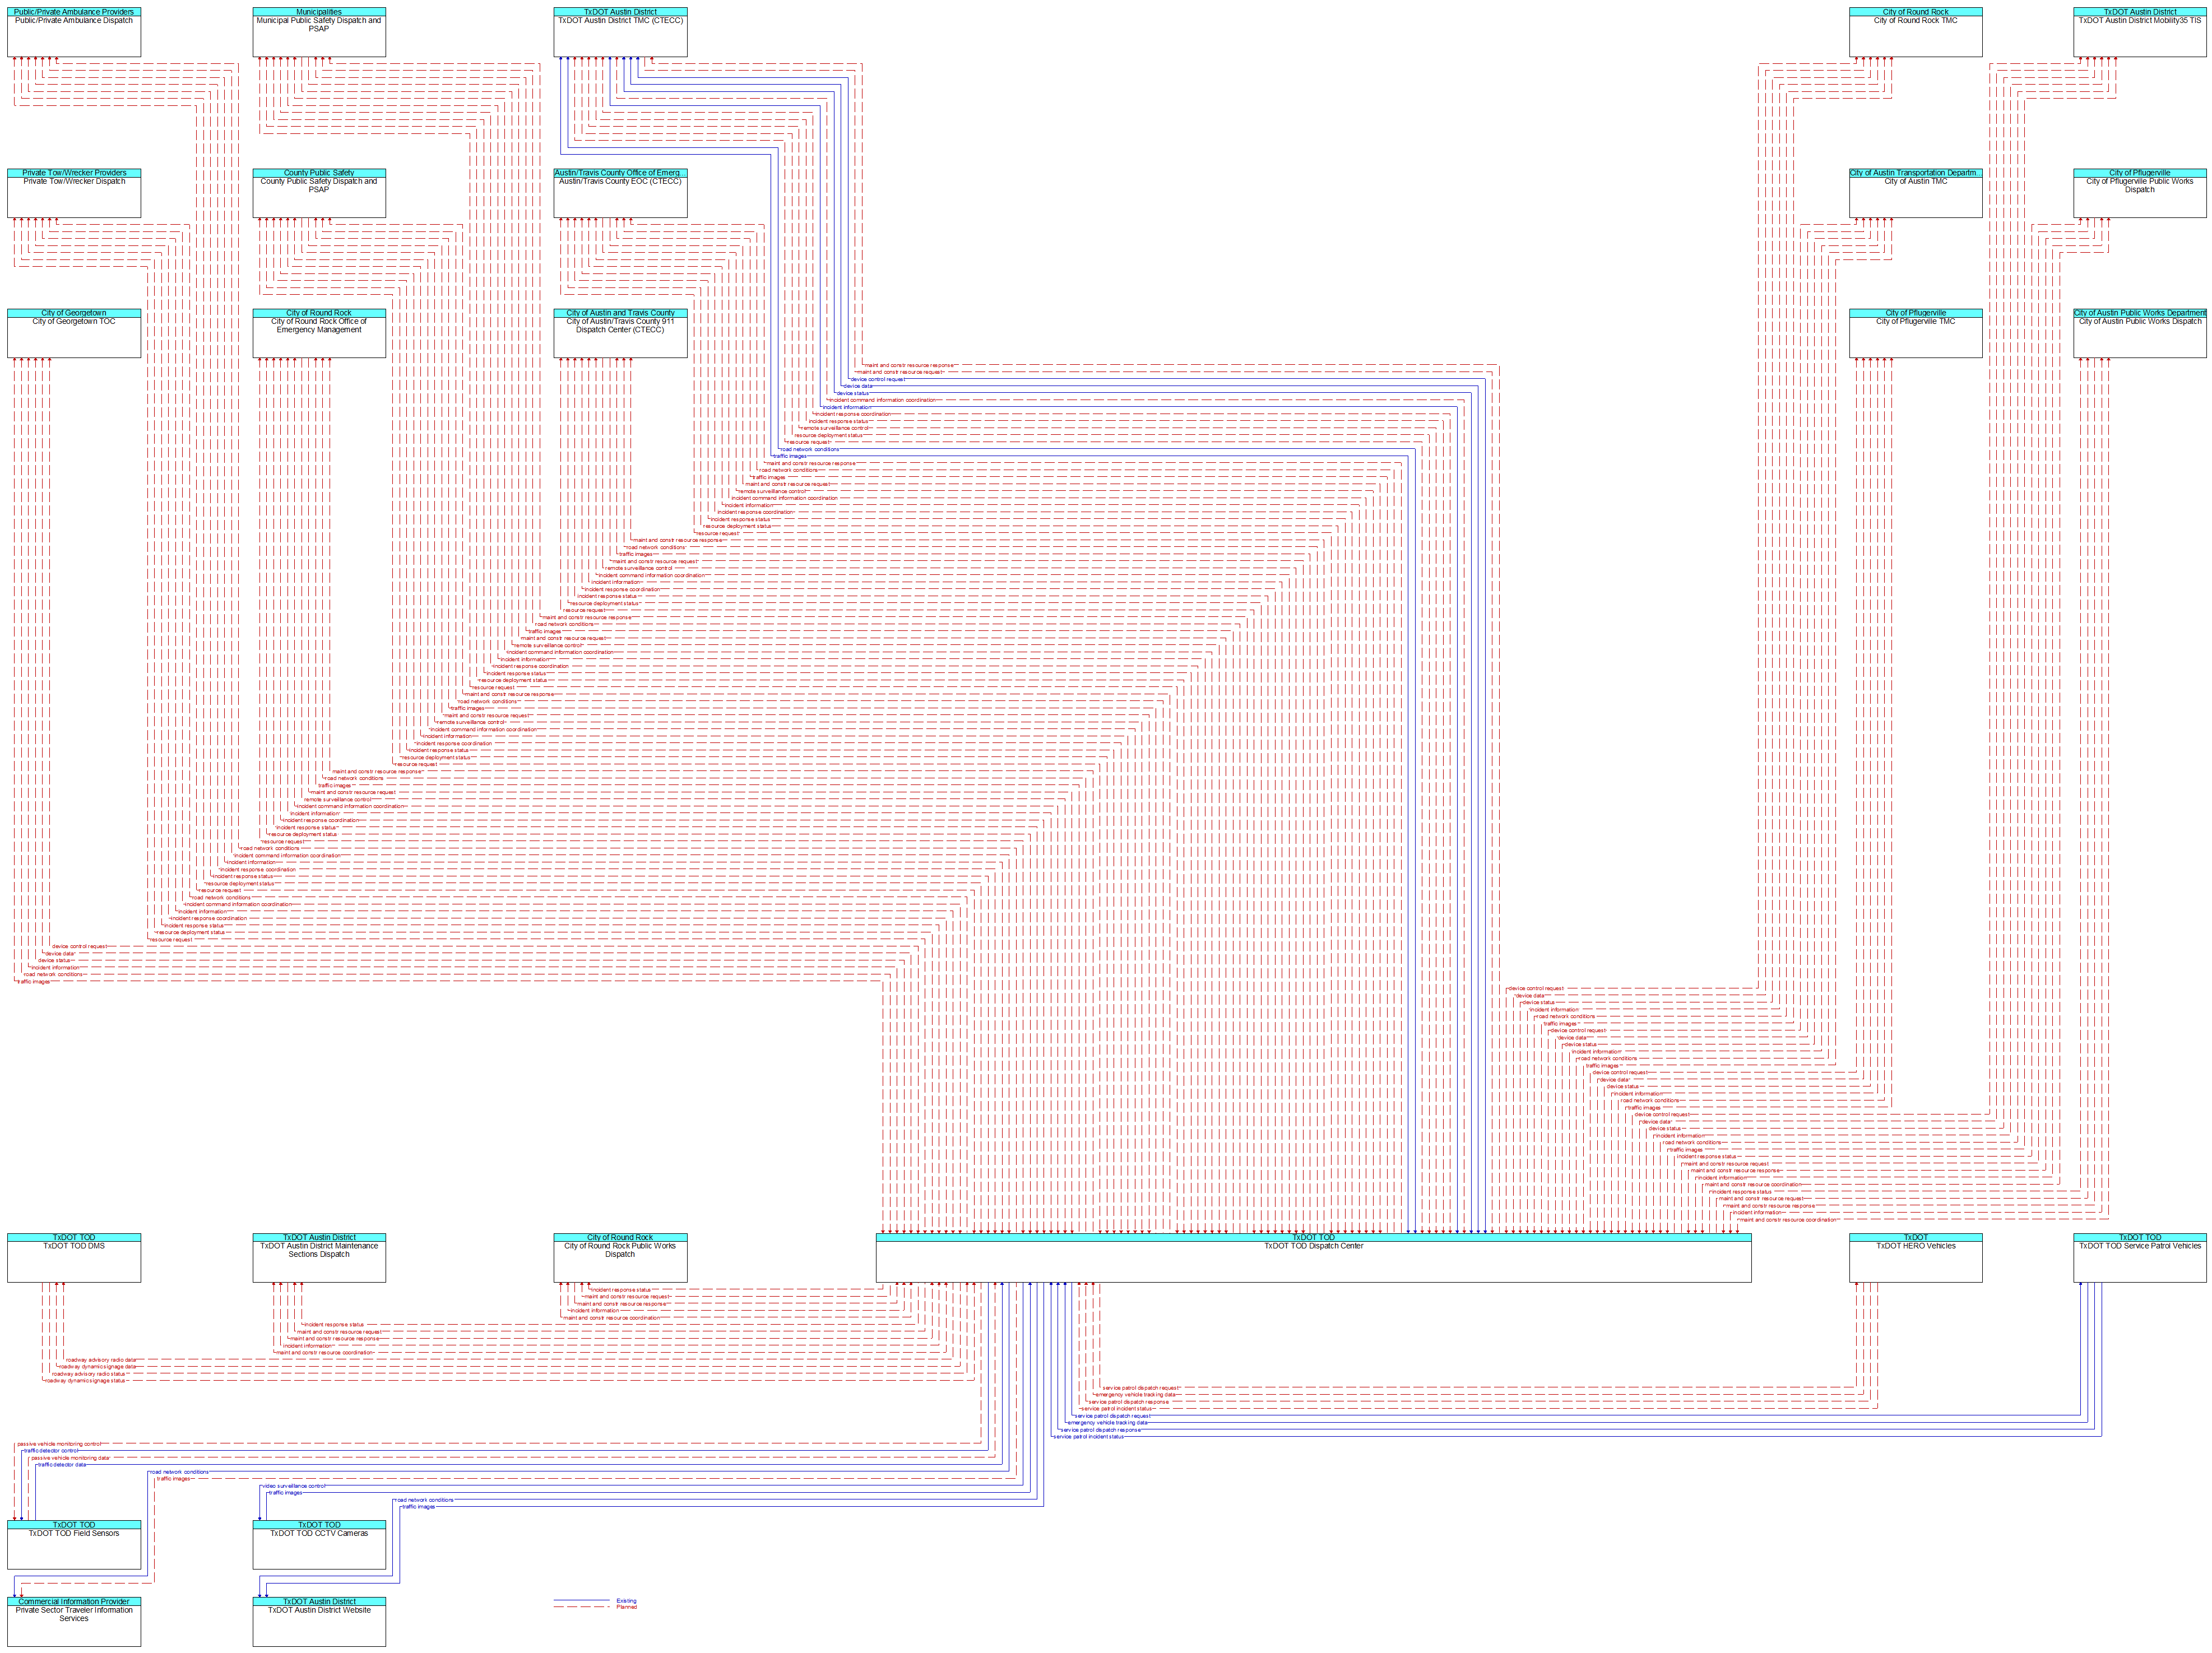 Context Diagram - TxDOT TOD Dispatch Center